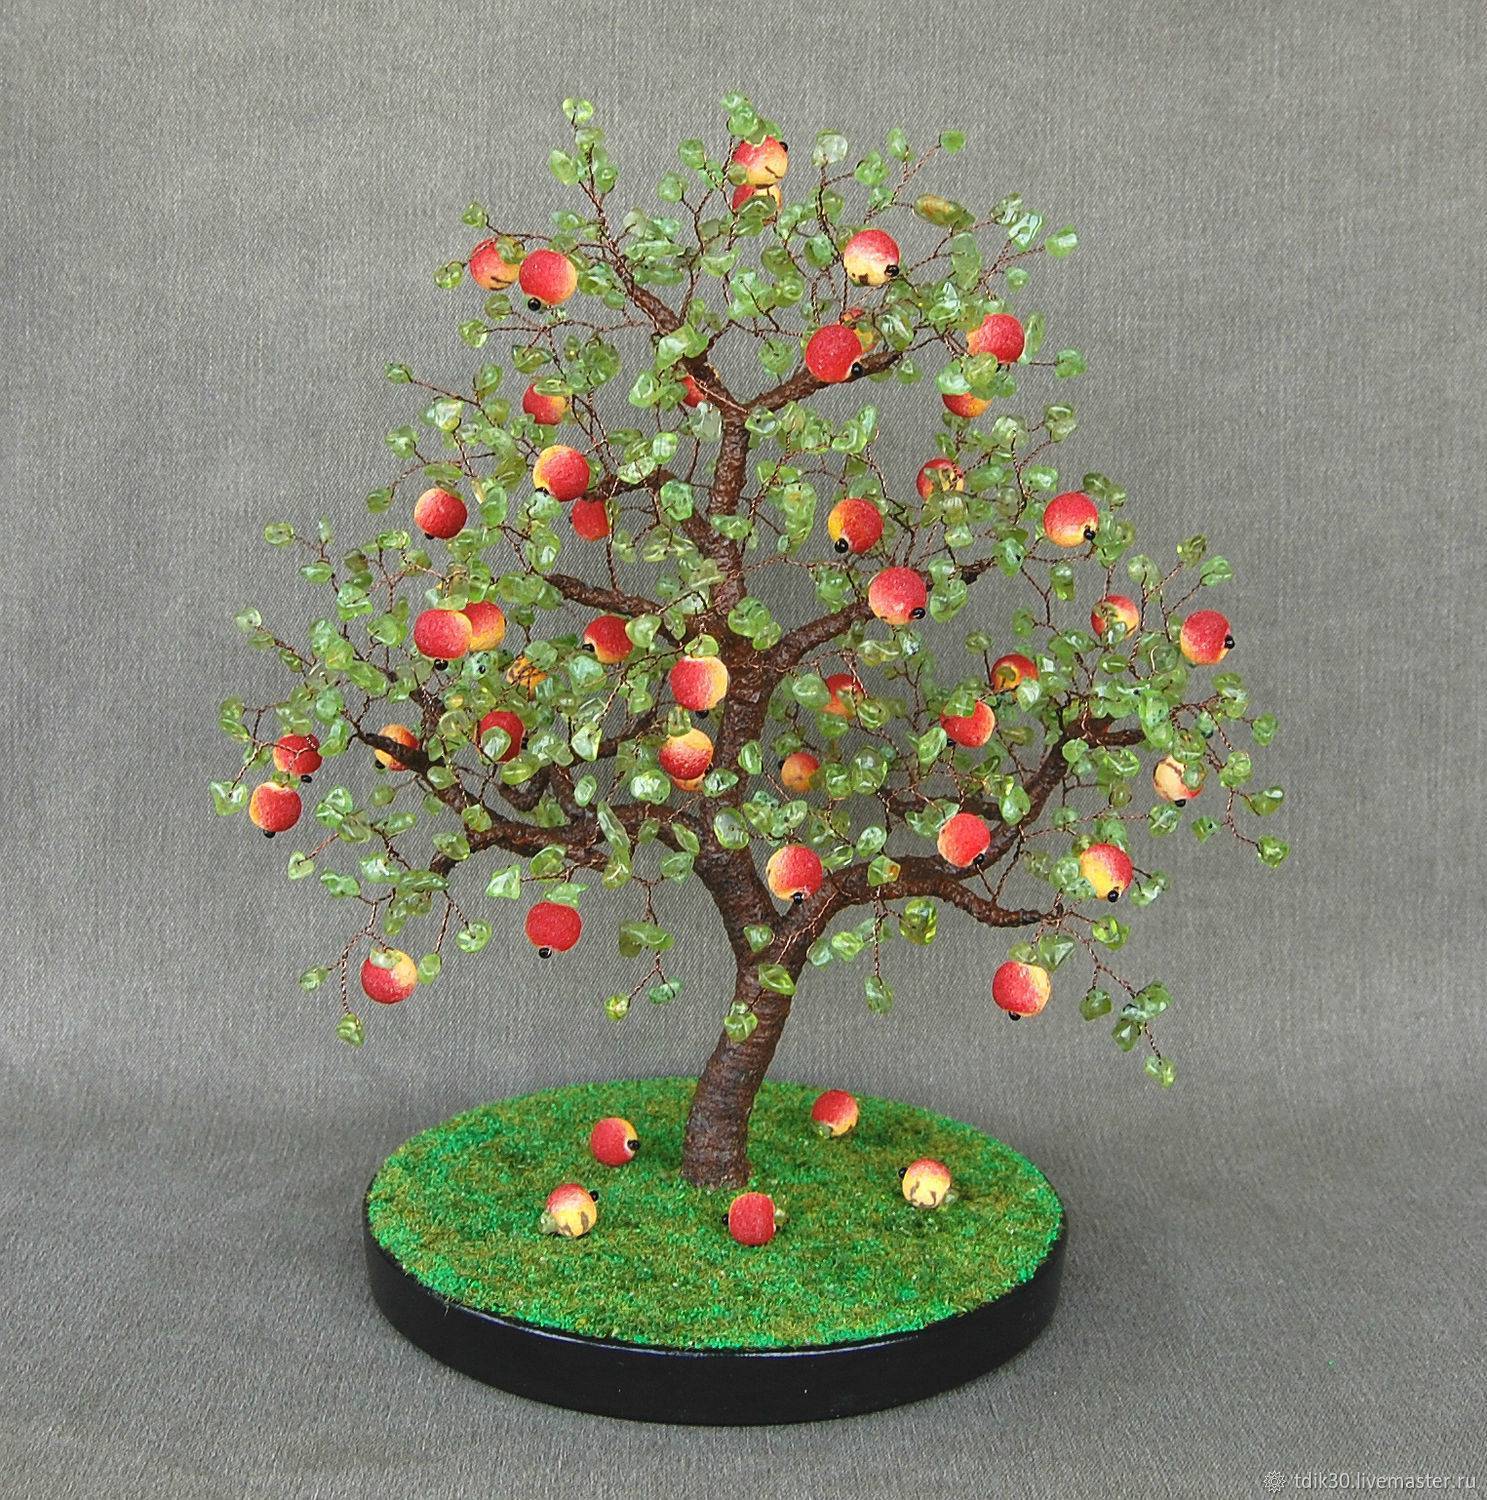 Листья и цветы яблони: полезные свойства, противопоказания и применение